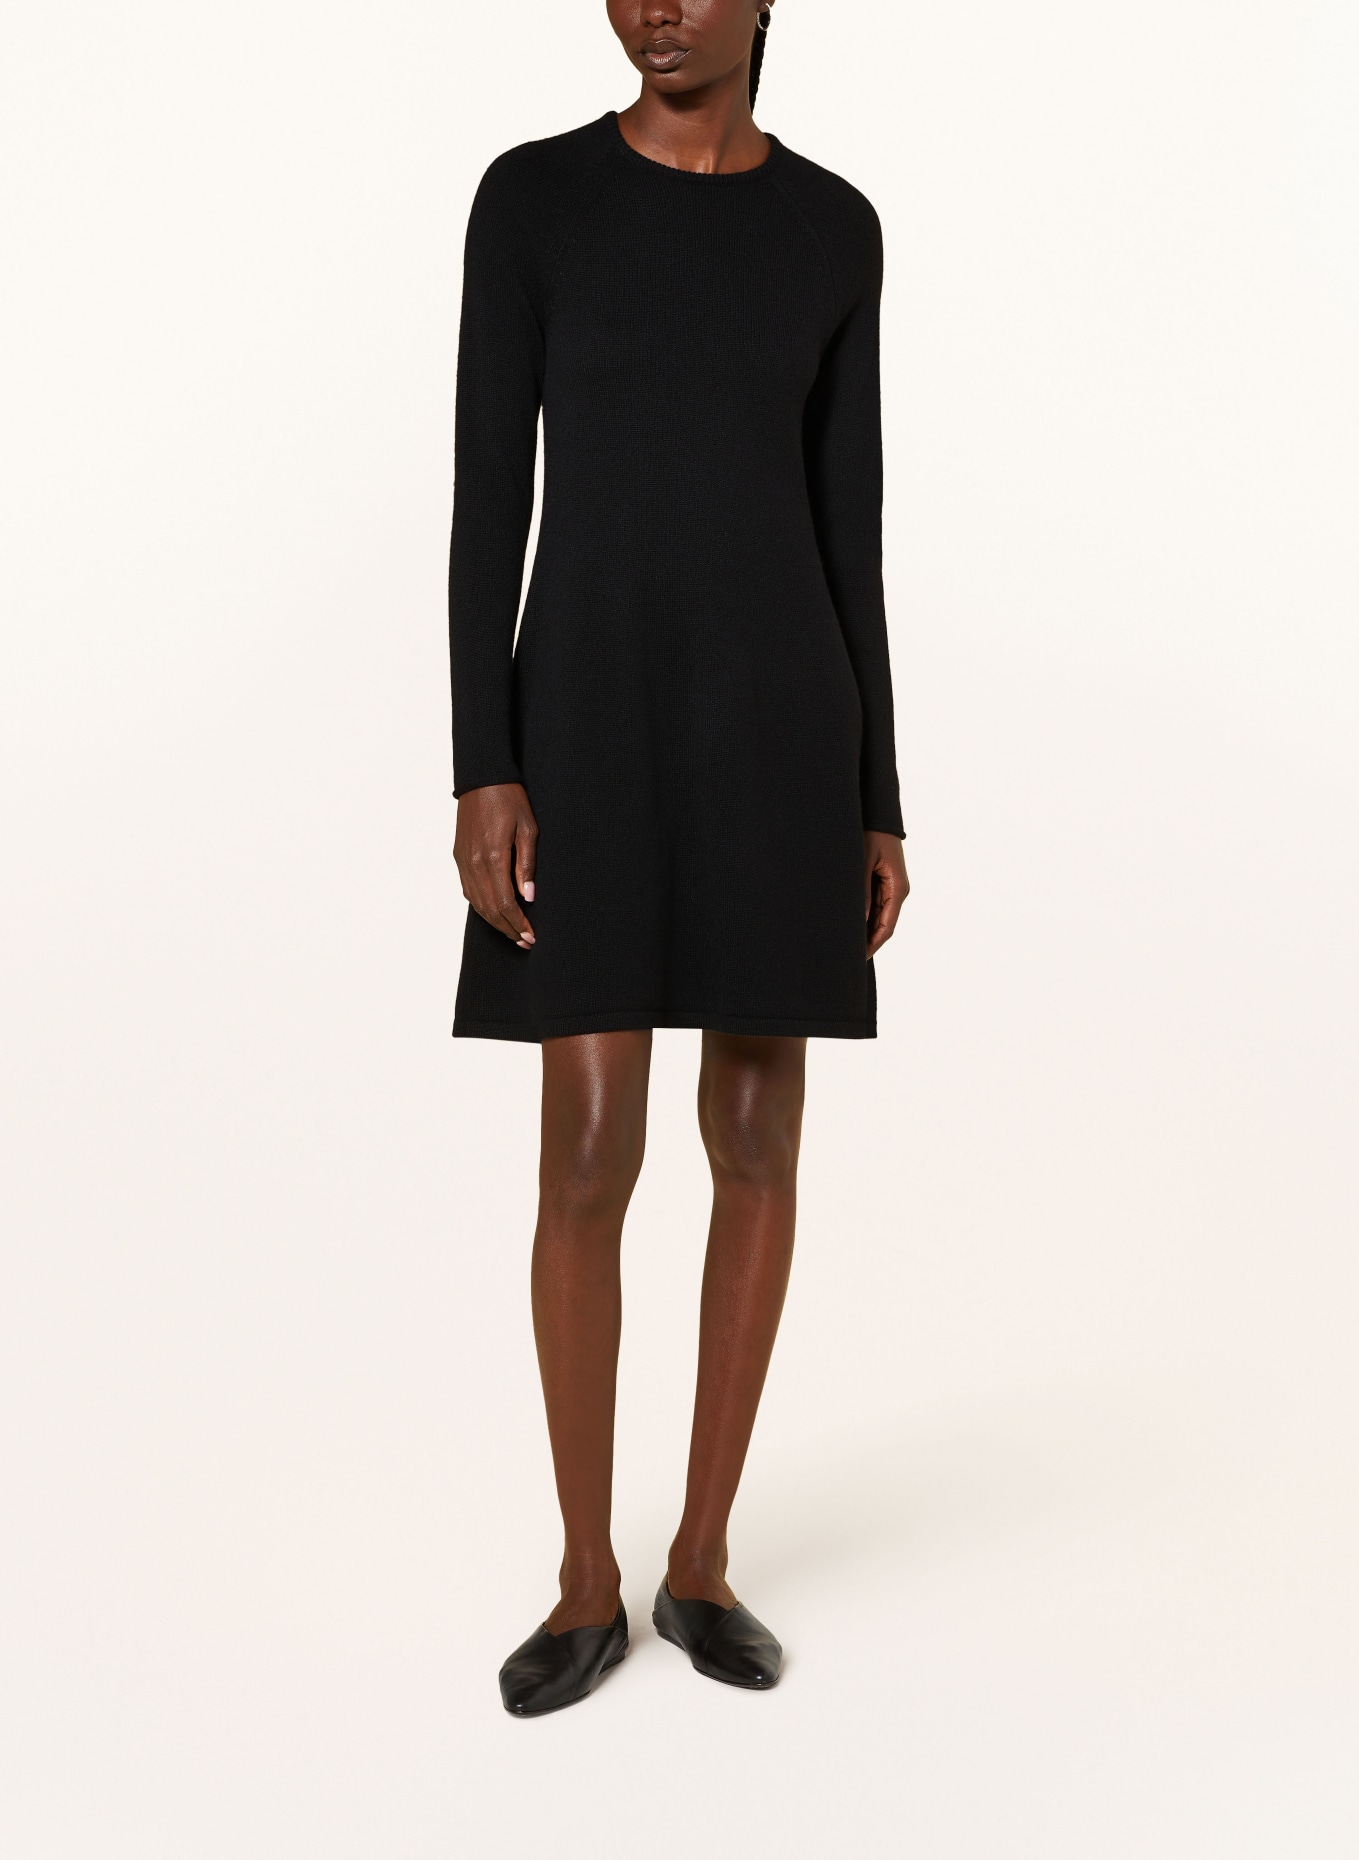 LISA YANG Cashmere knit dress, Color: BLACK (Image 2)